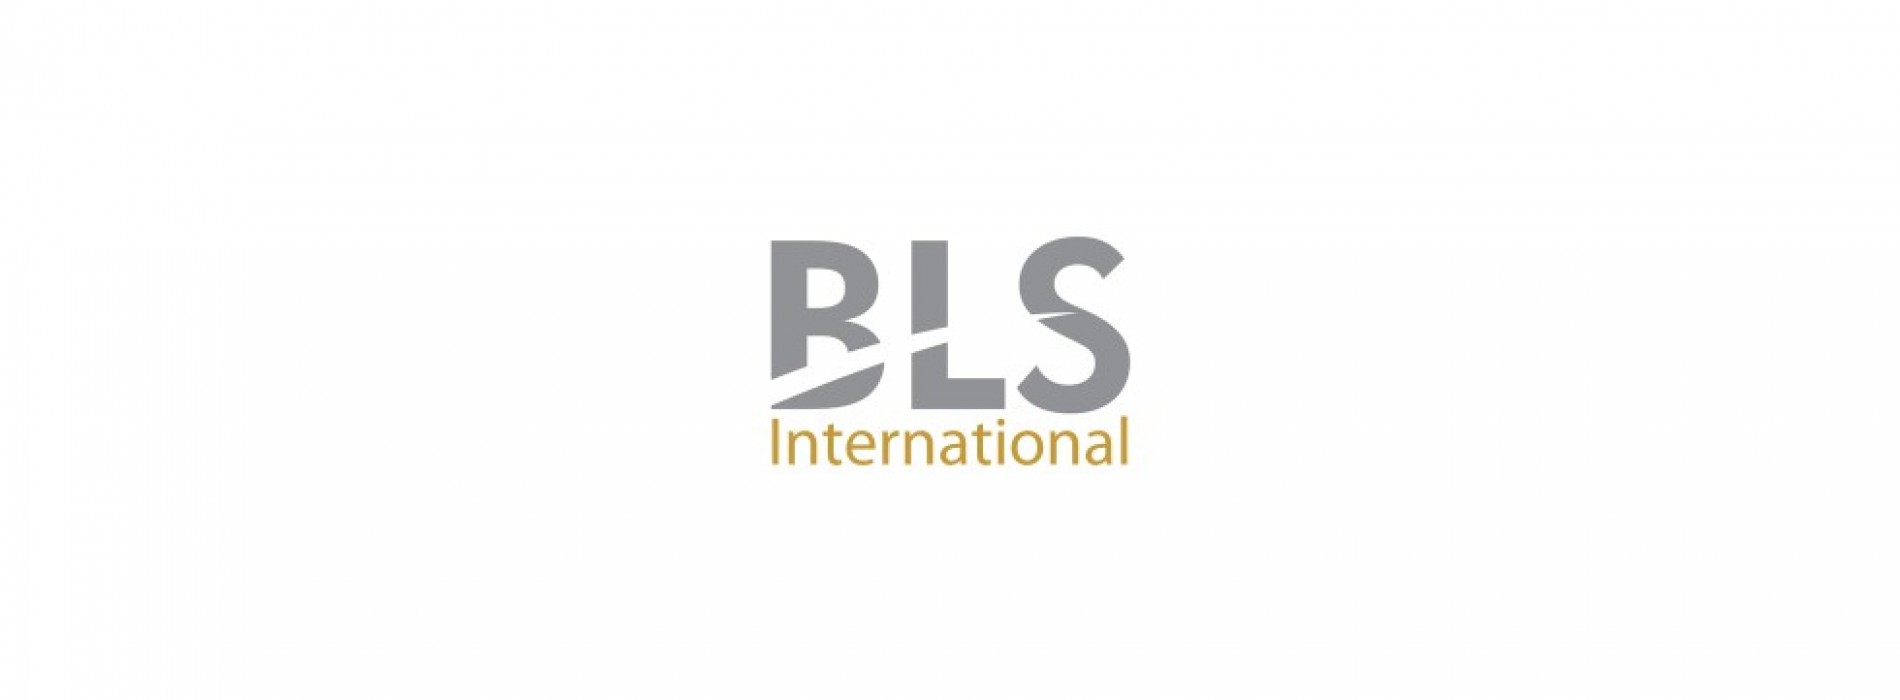 BLS International launches Spain Visa Application Center in Chennai